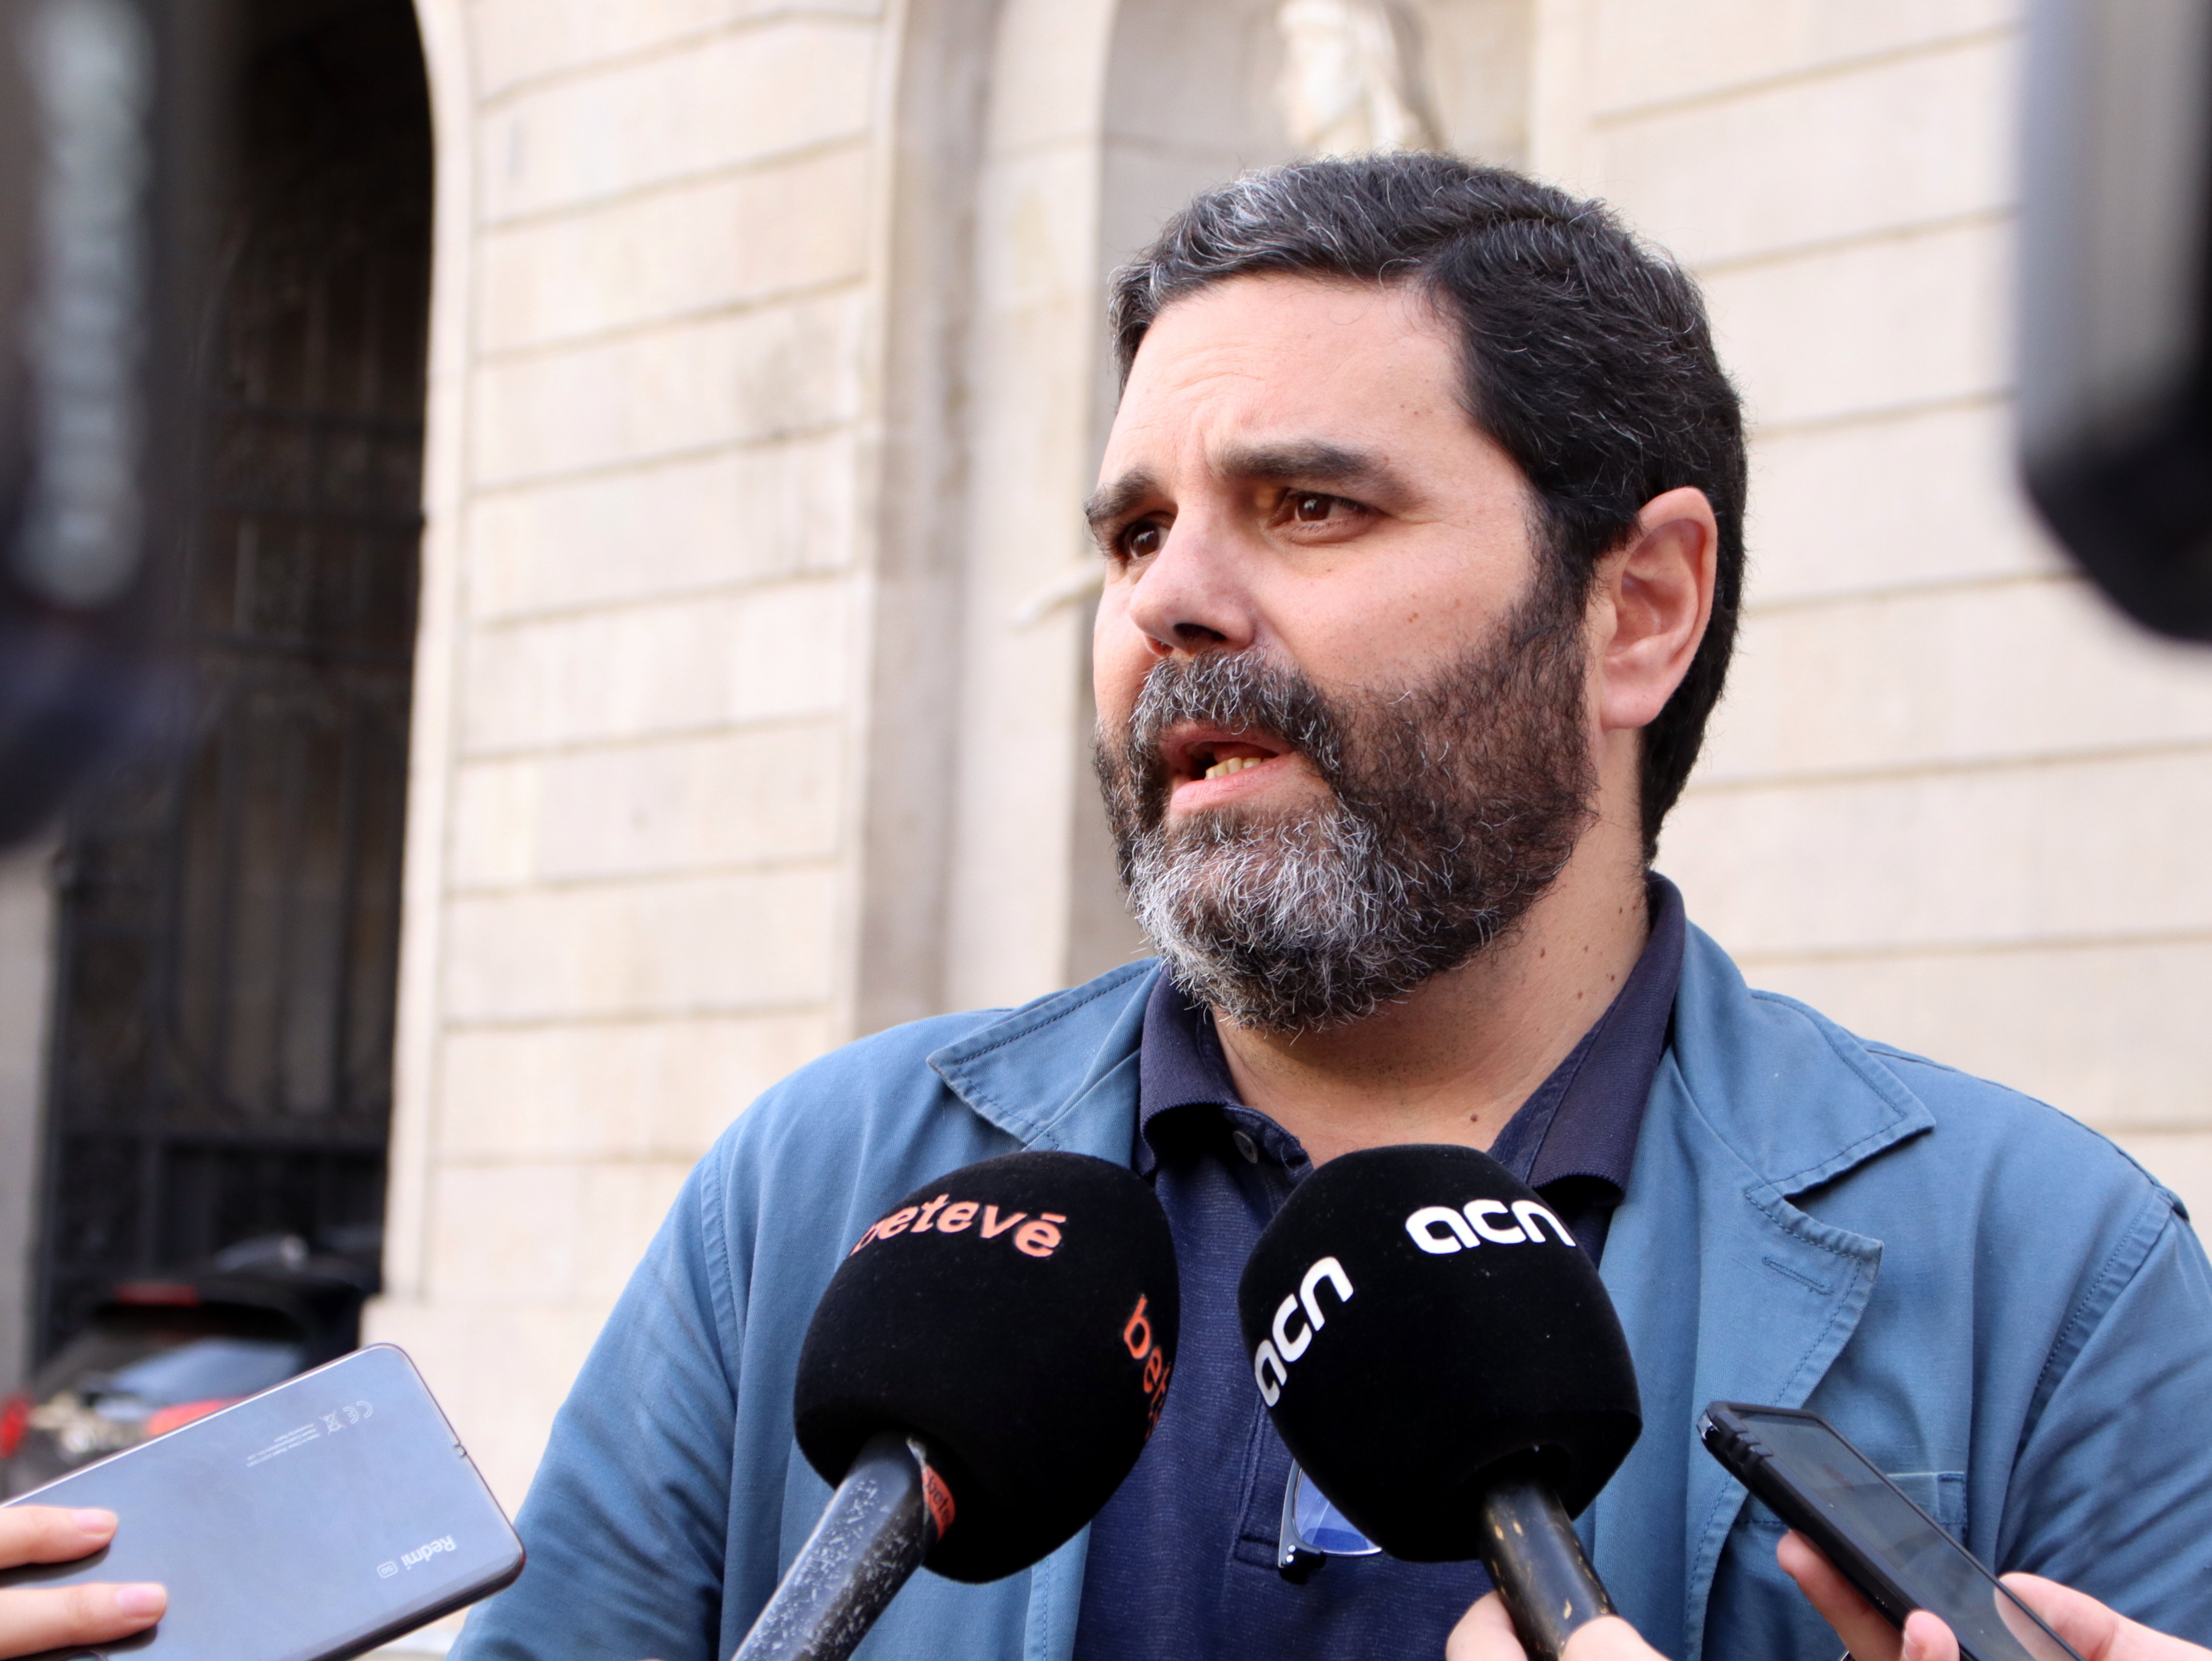 Continua el vodevil a Ciutadans Barcelona, ara el partit trenca relacions amb Paco Sierra